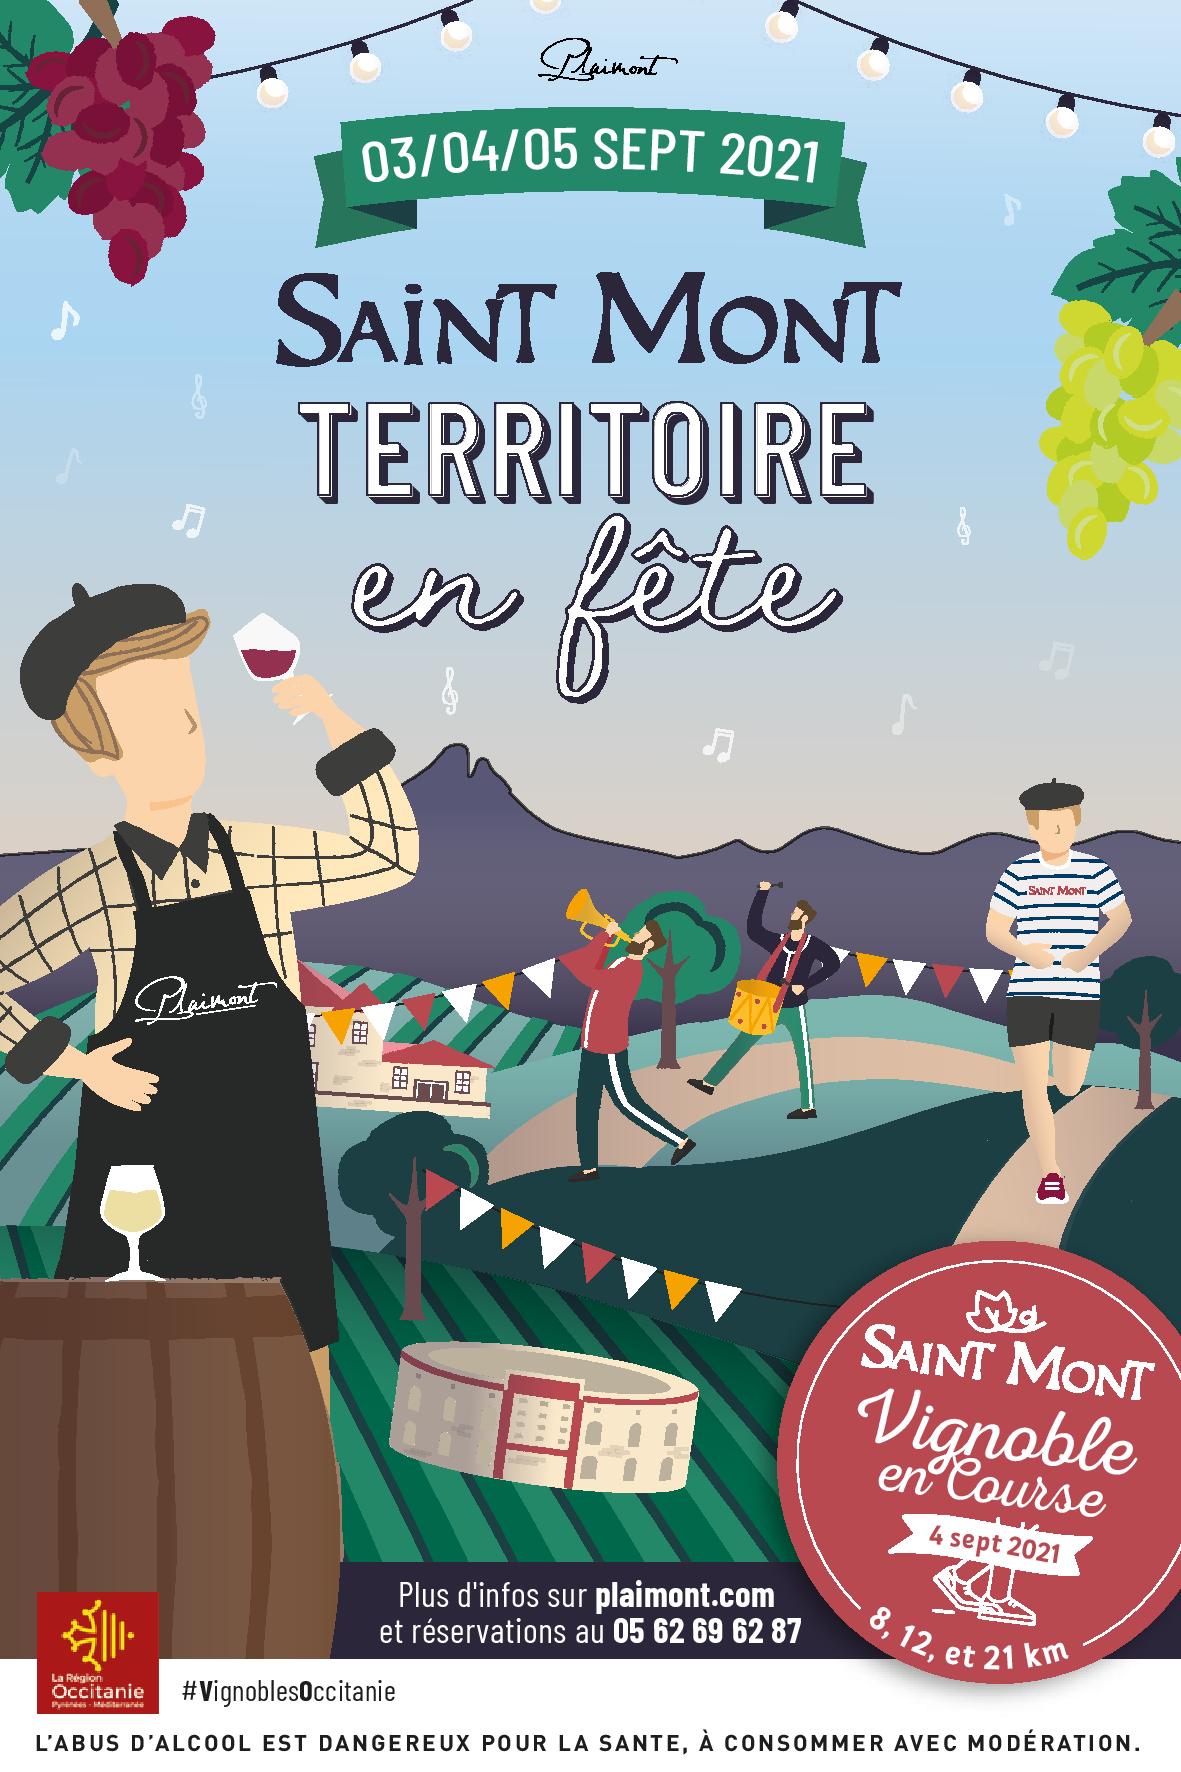 Gers - Le territoire de Saint Mont s'anime pendant trois jours les 3, 4 et 5 septembre 2021.